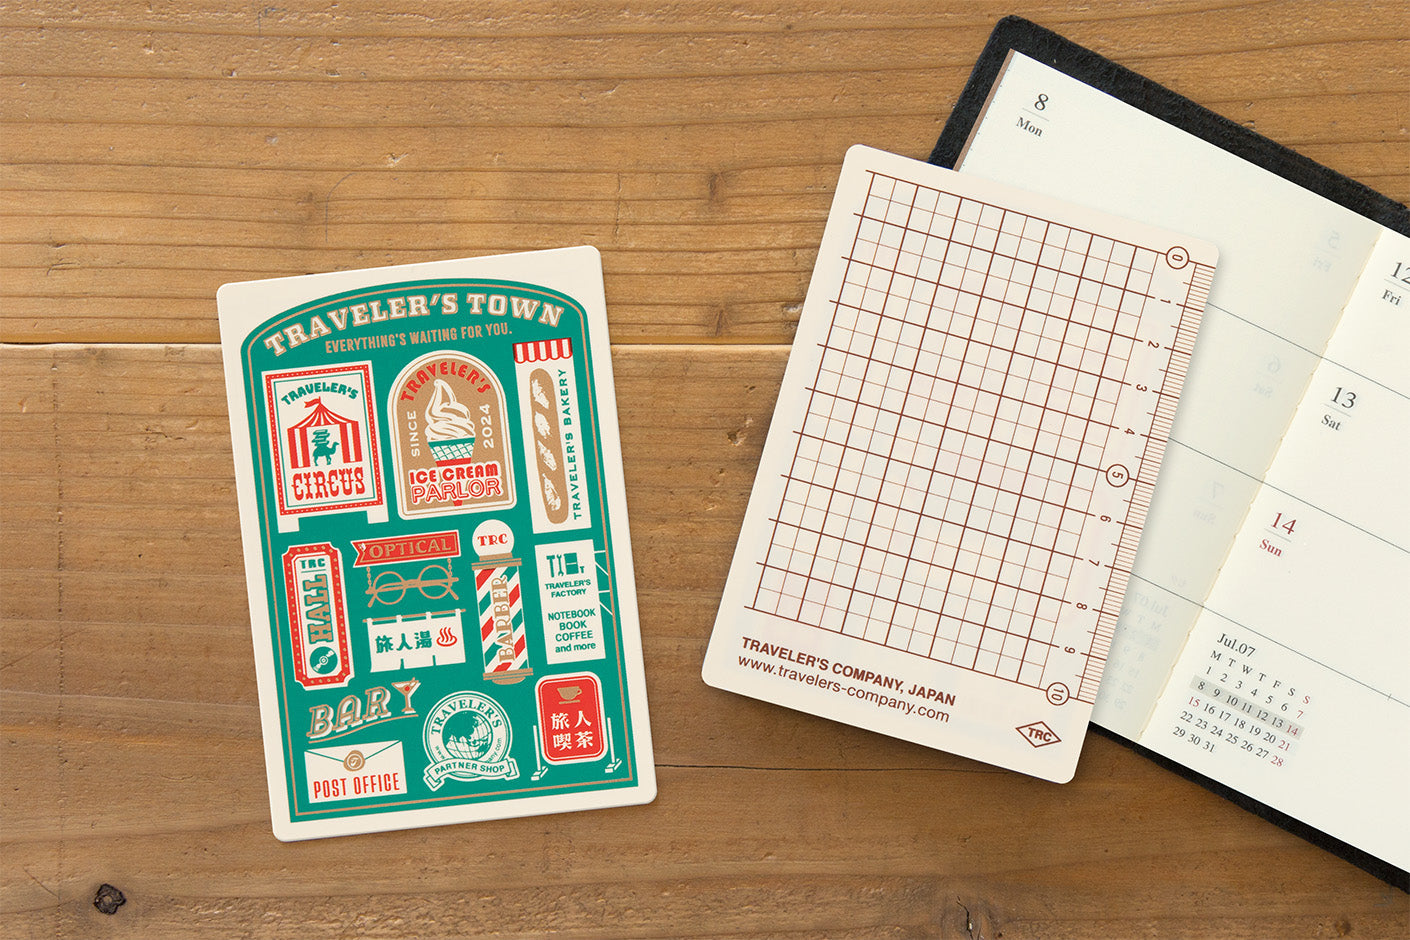 TRAVELER’S notebook Passport Size Refill Sticker Release Paper